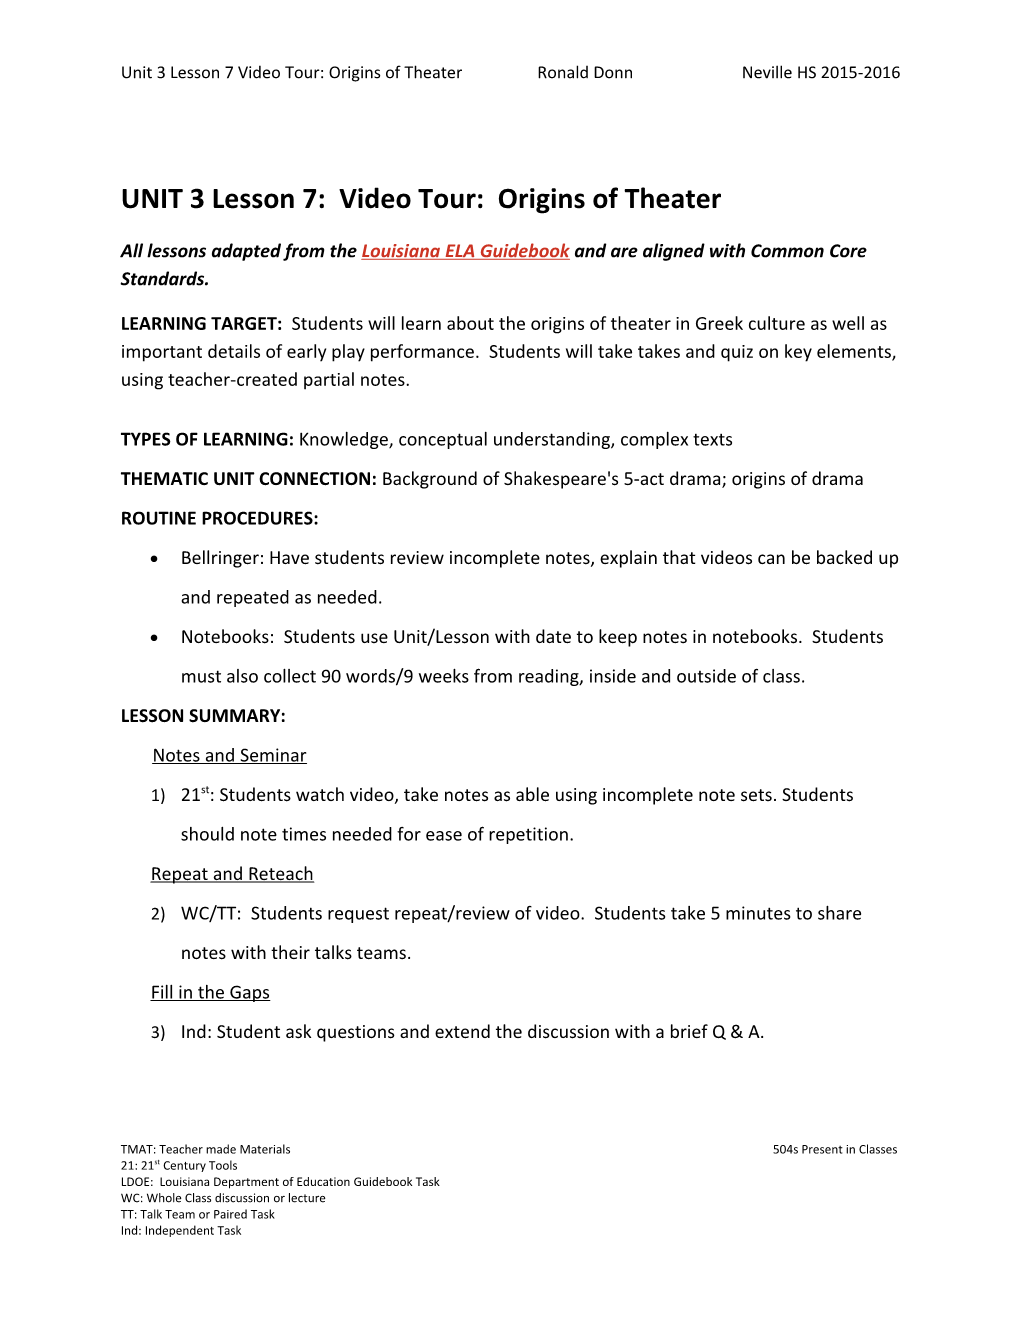 UNIT 3 Lesson 7: Video Tour: Origins of Theater